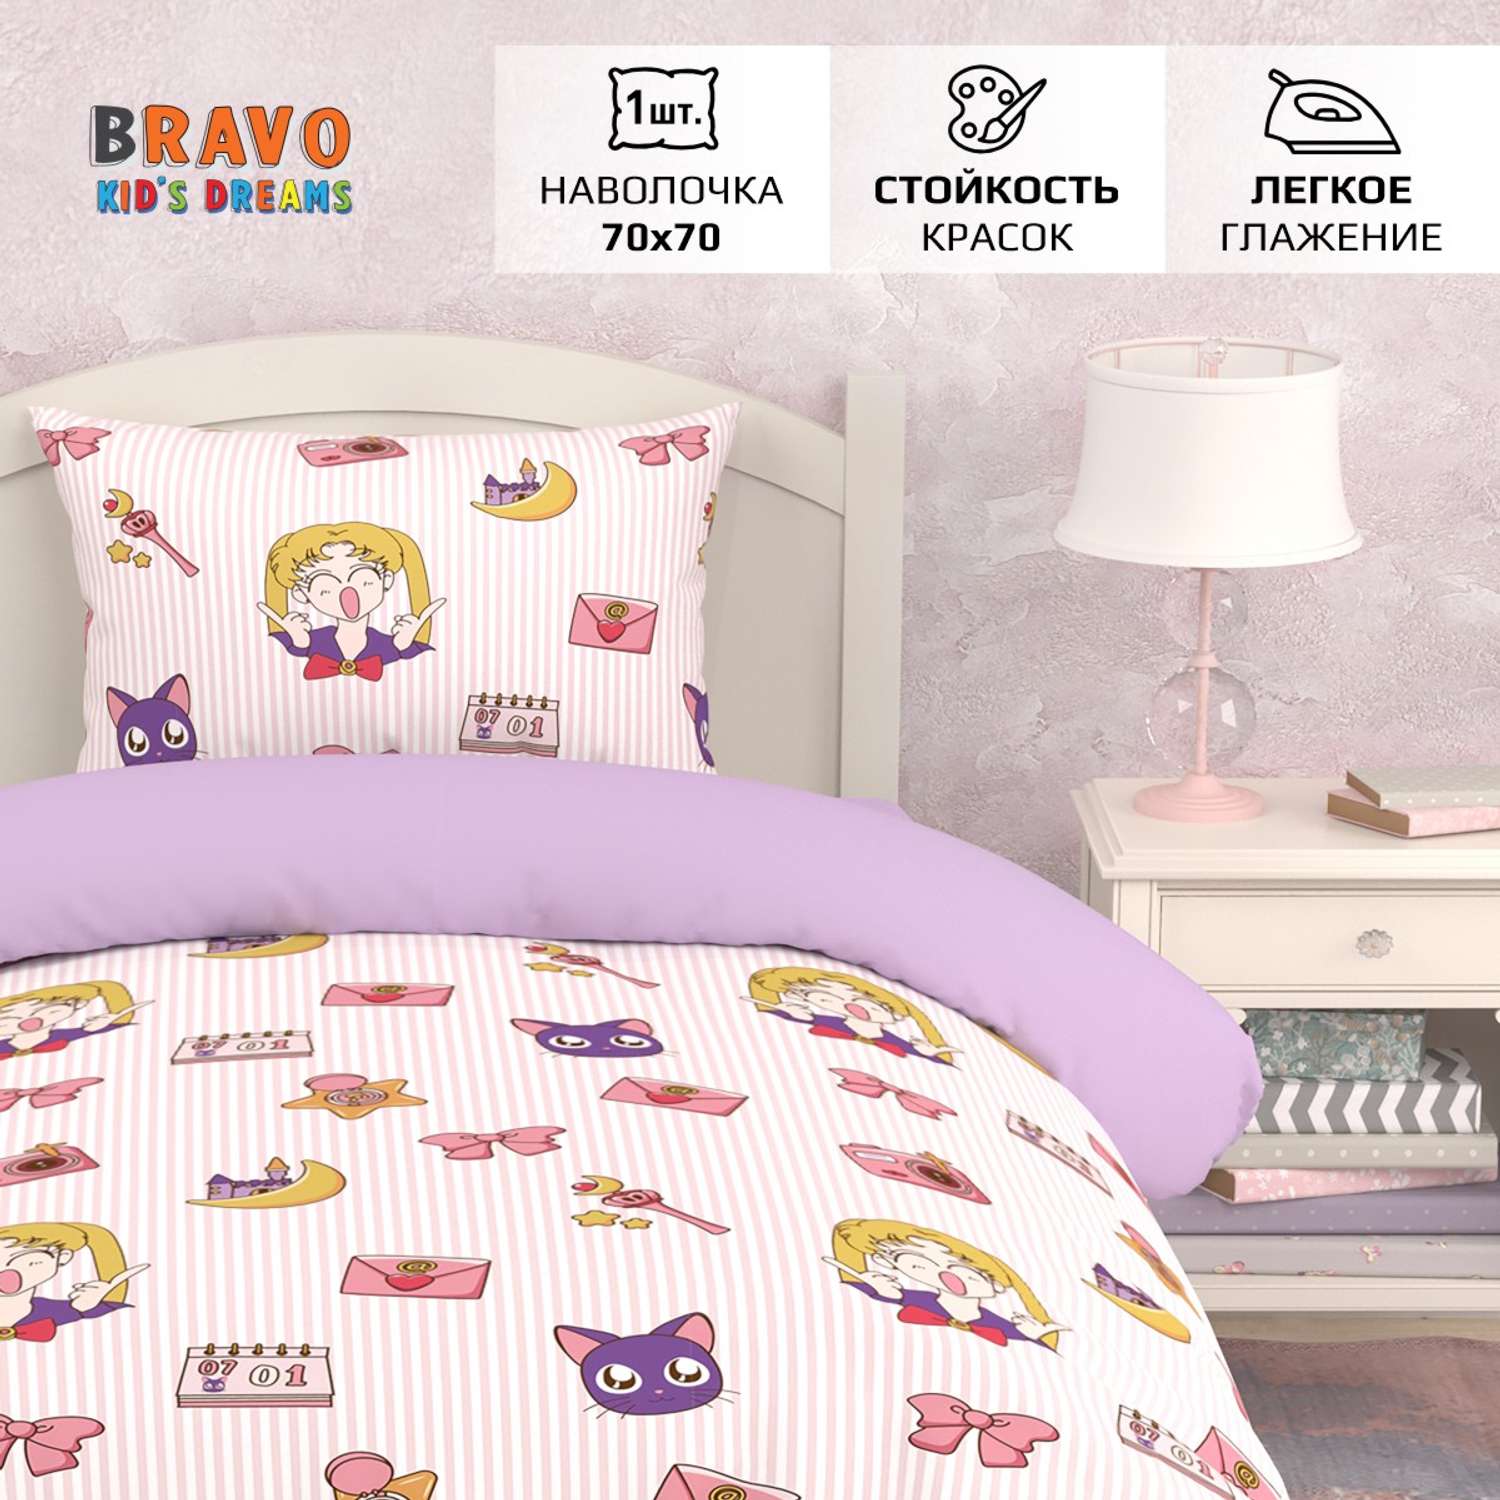 Комплект постельного белья BRAVO kids dreams Аниме 1.5 спальный простыня на резинке 90х200 - фото 1